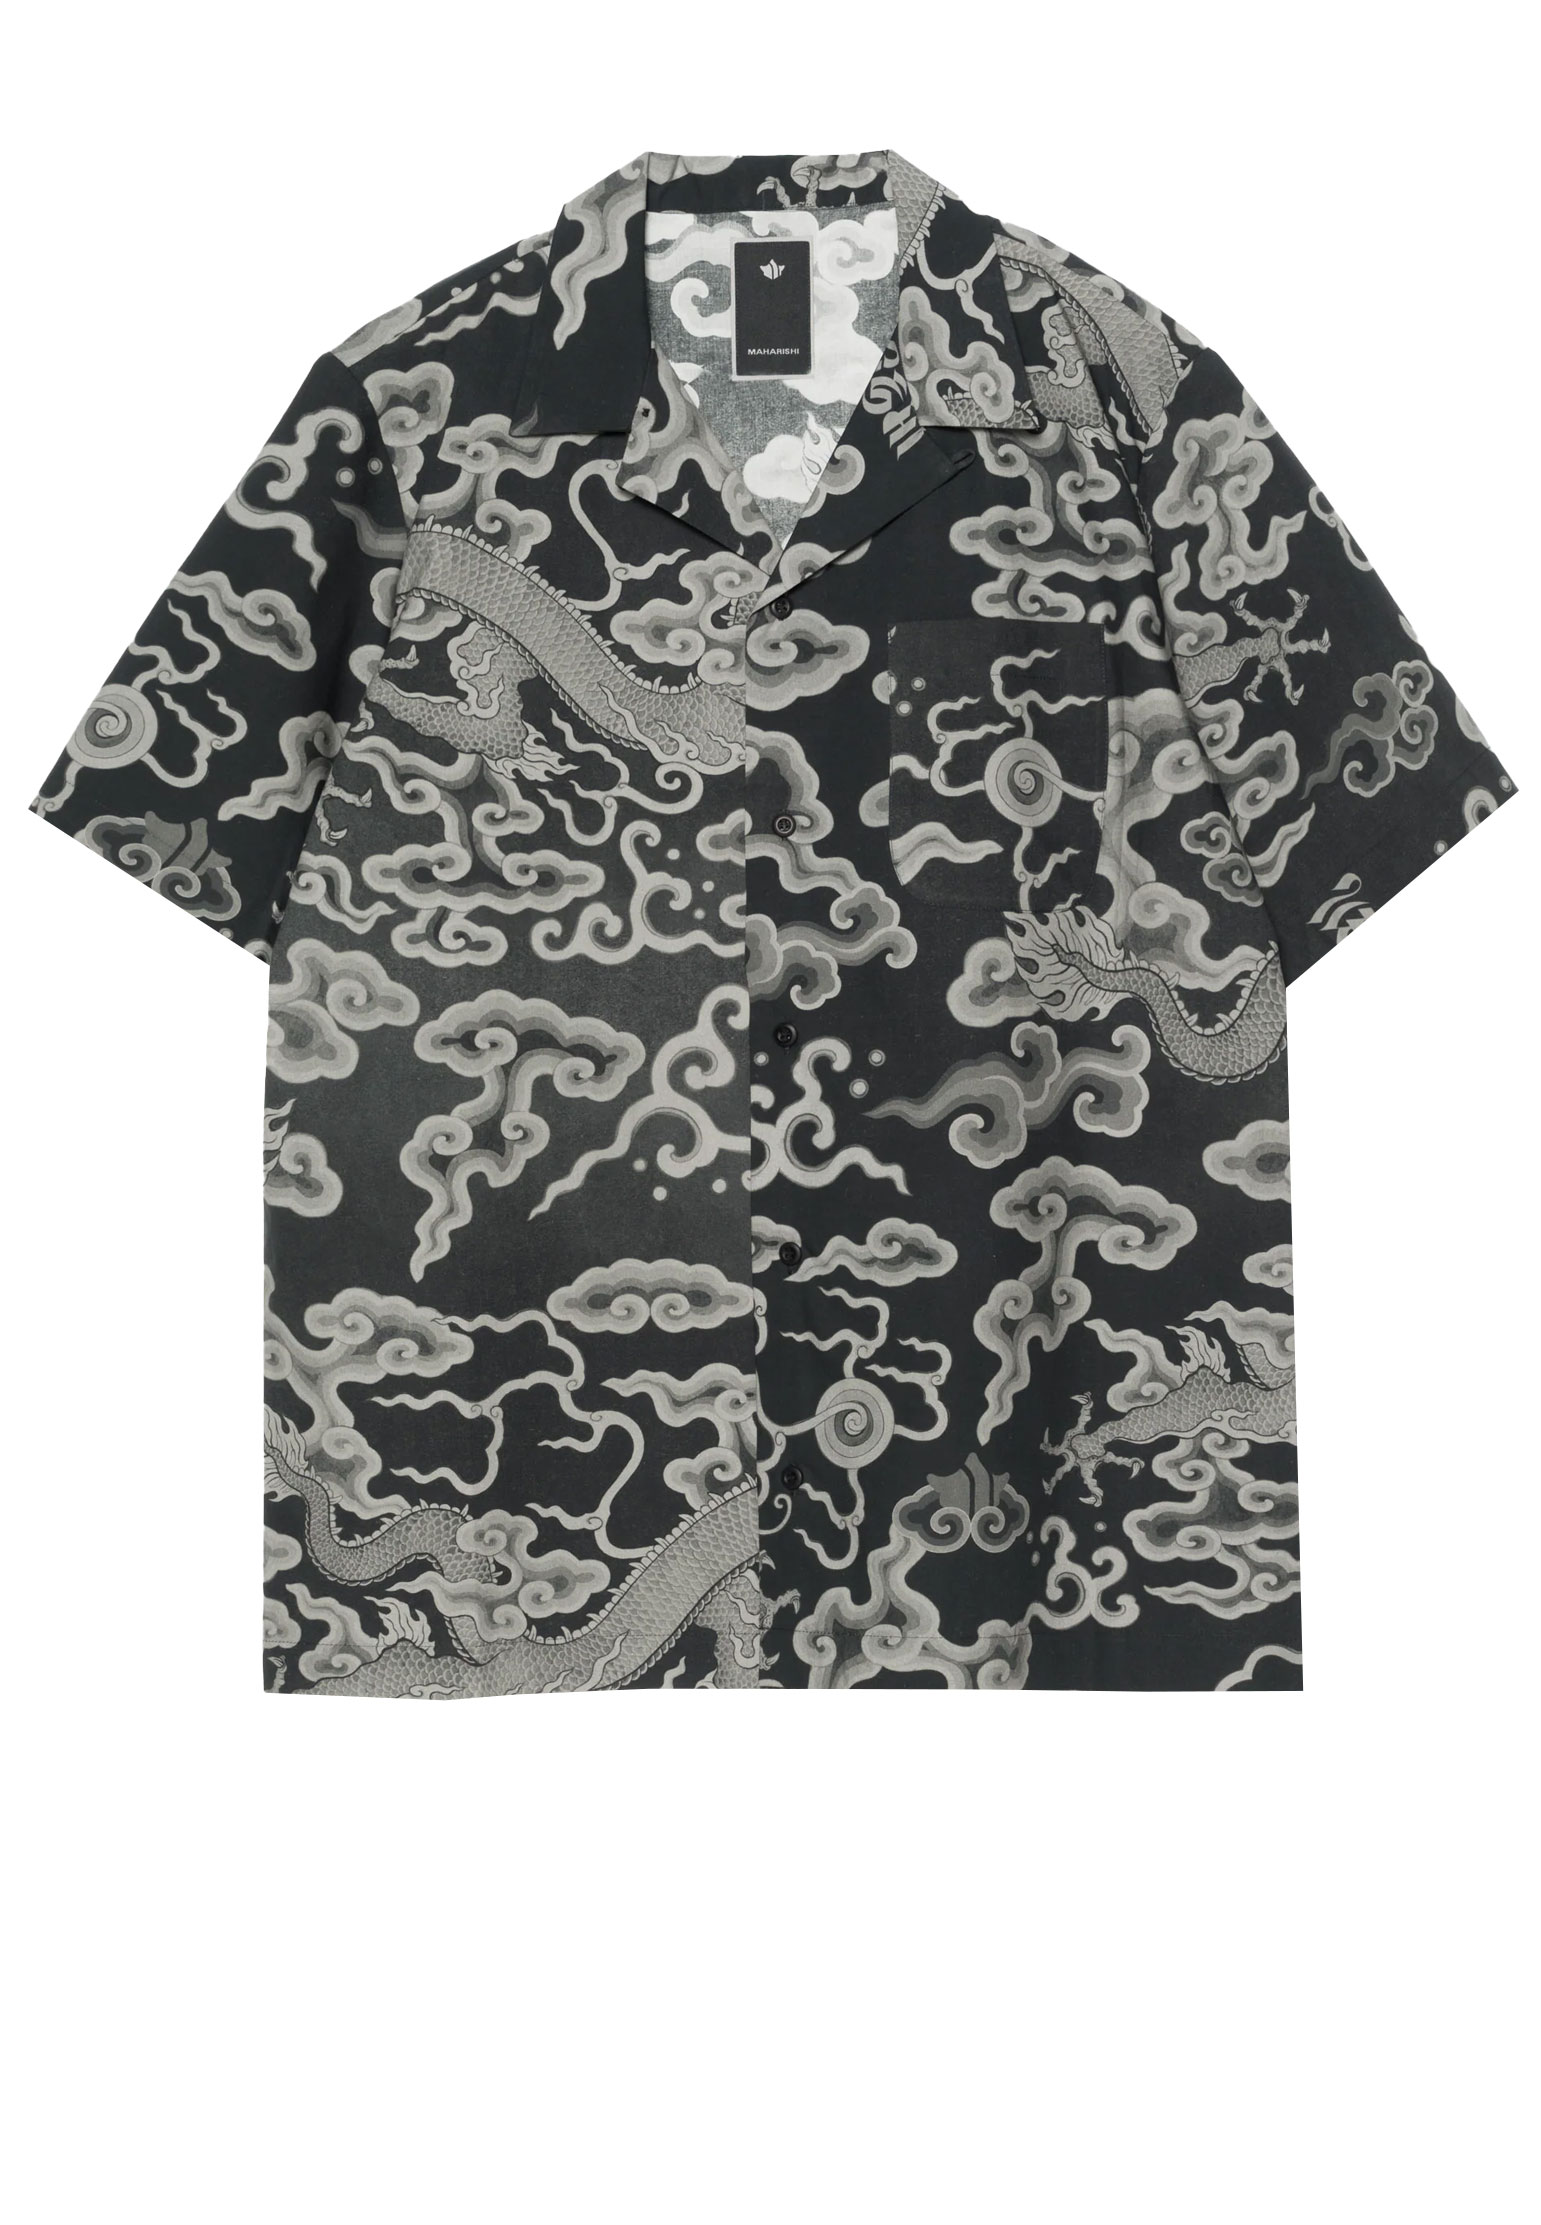 Рубашка MAHARISHI Черный, размер M 176255 - фото 1